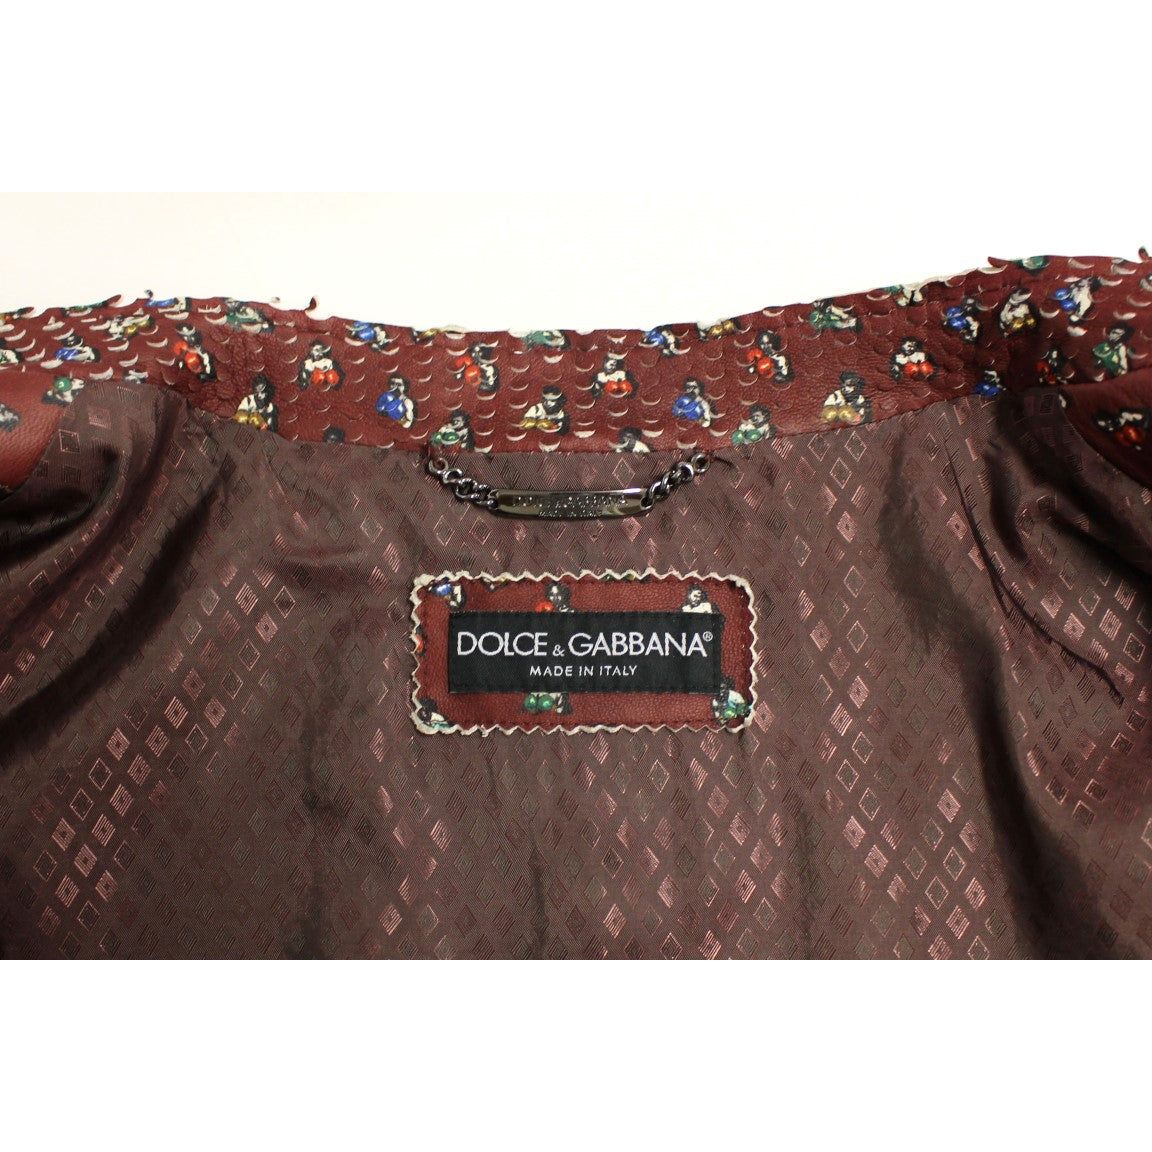 Dolce & Gabbana Exclusive Boxer Print Bordeaux Leather Jacket Coats & Jackets bordeaux-leather-boxer-print-jacket-coat